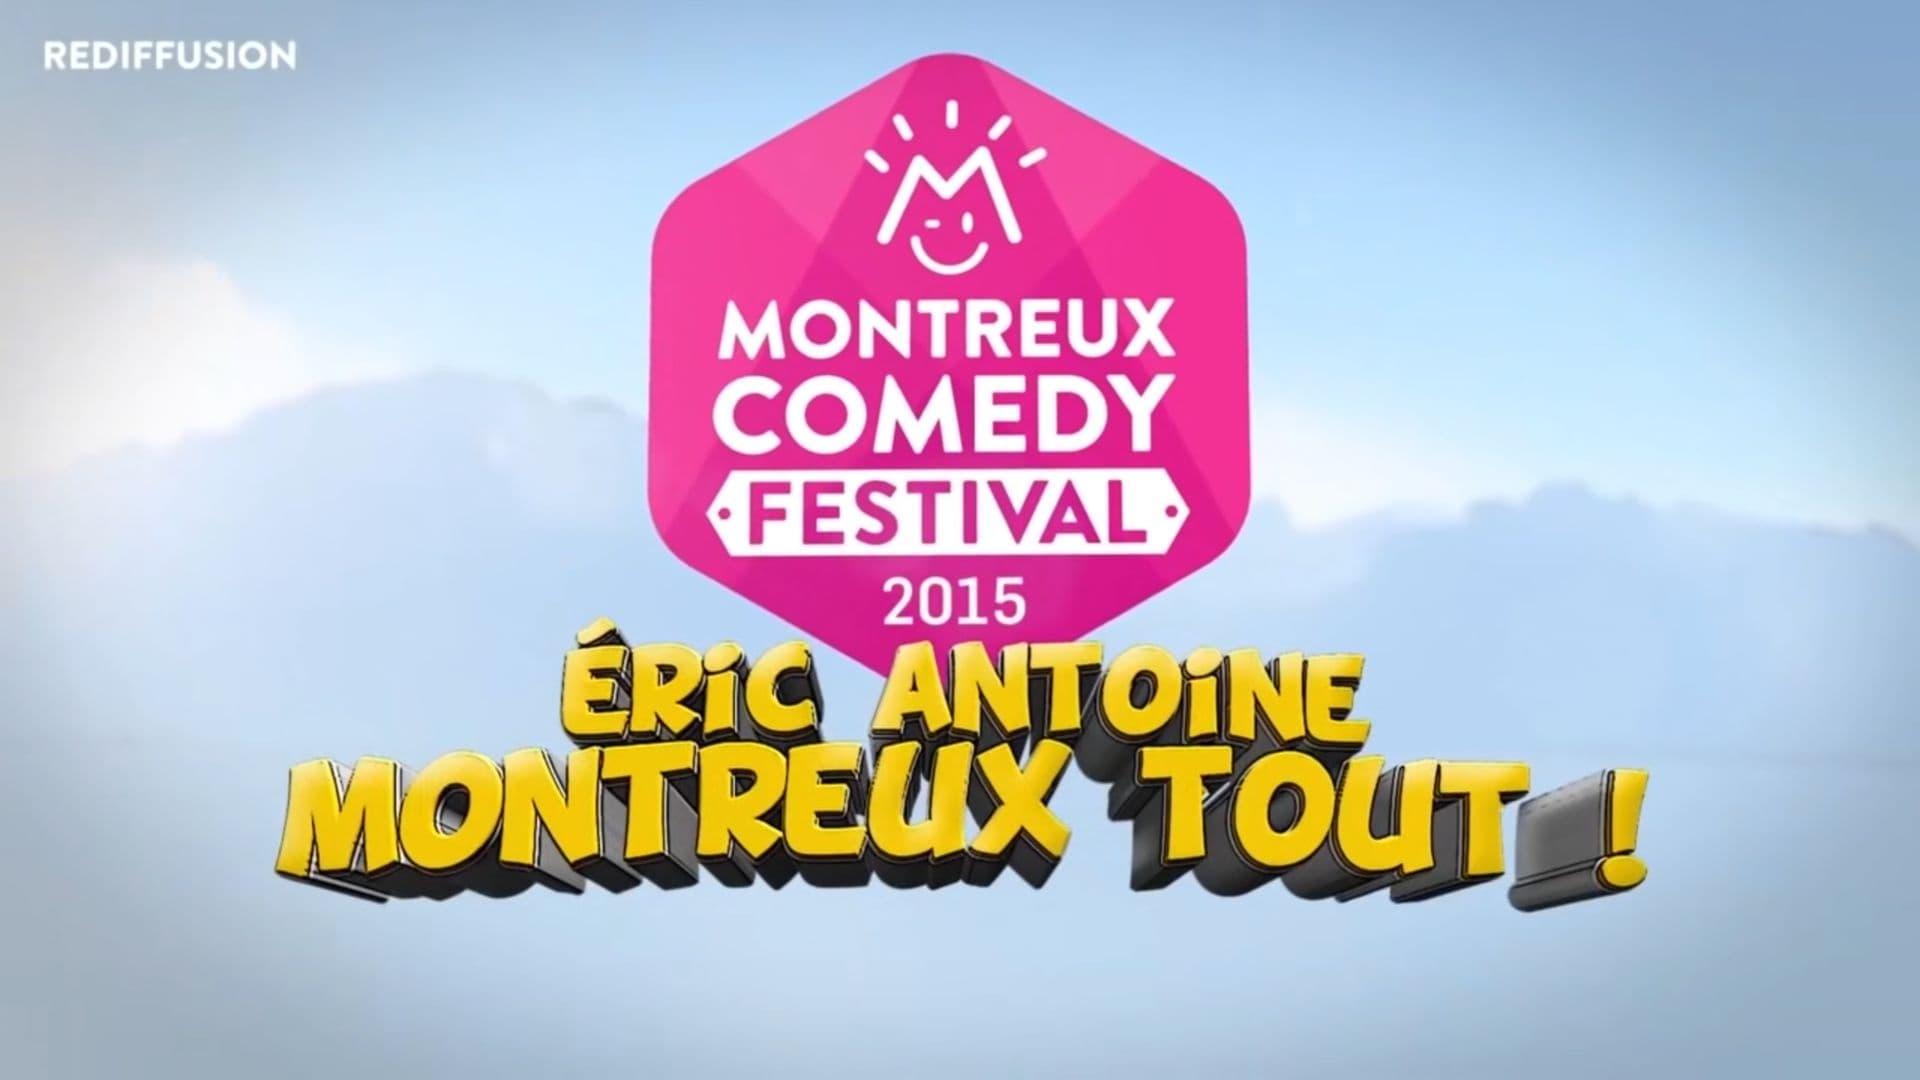 Montreux Comedy Festival 2015 - Eric Antoine Montreux tout backdrop